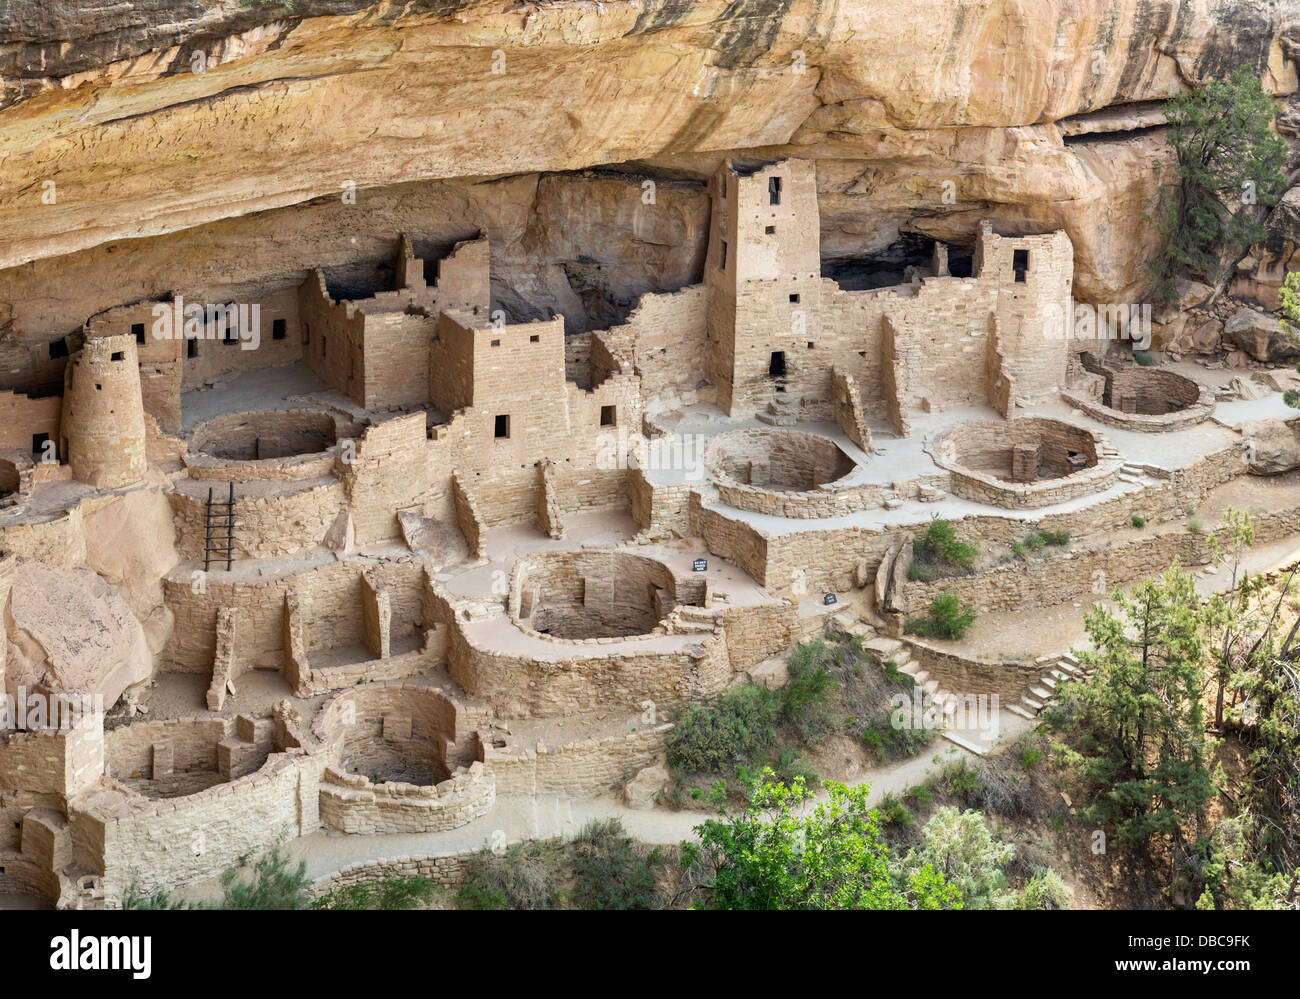 [Image: cliff-palace-ancient-anasazi-pueblo-dwel...DBC9FK.jpg]